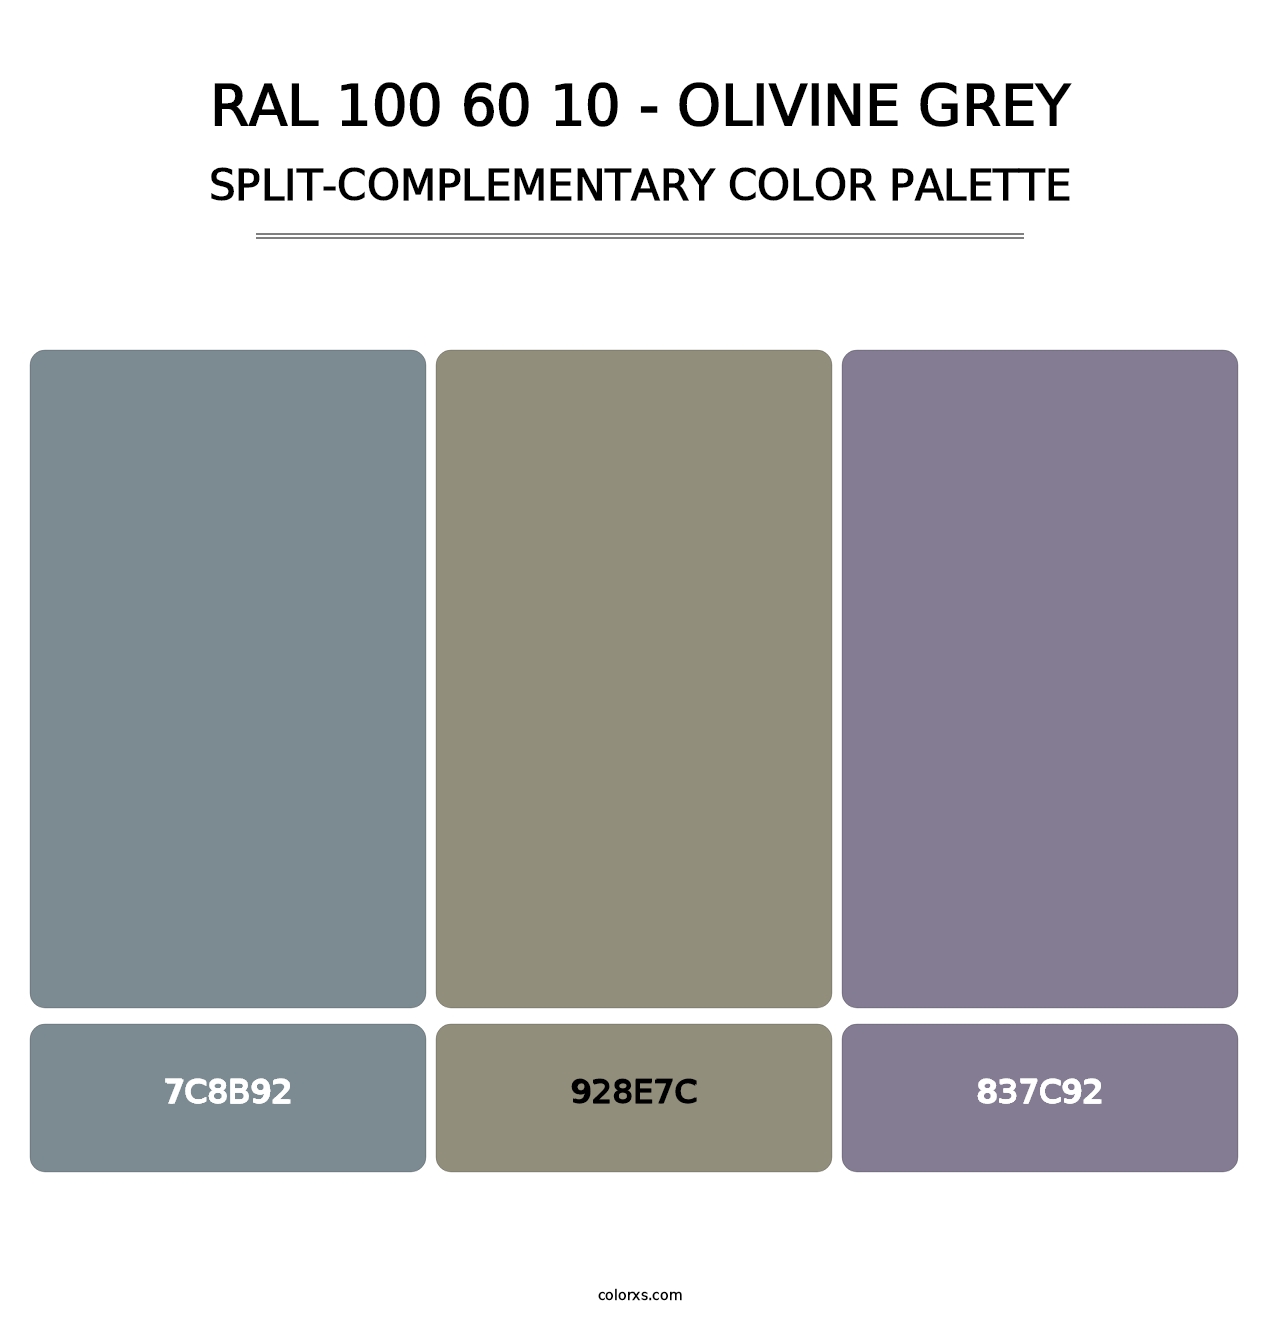 RAL 100 60 10 - Olivine Grey - Split-Complementary Color Palette